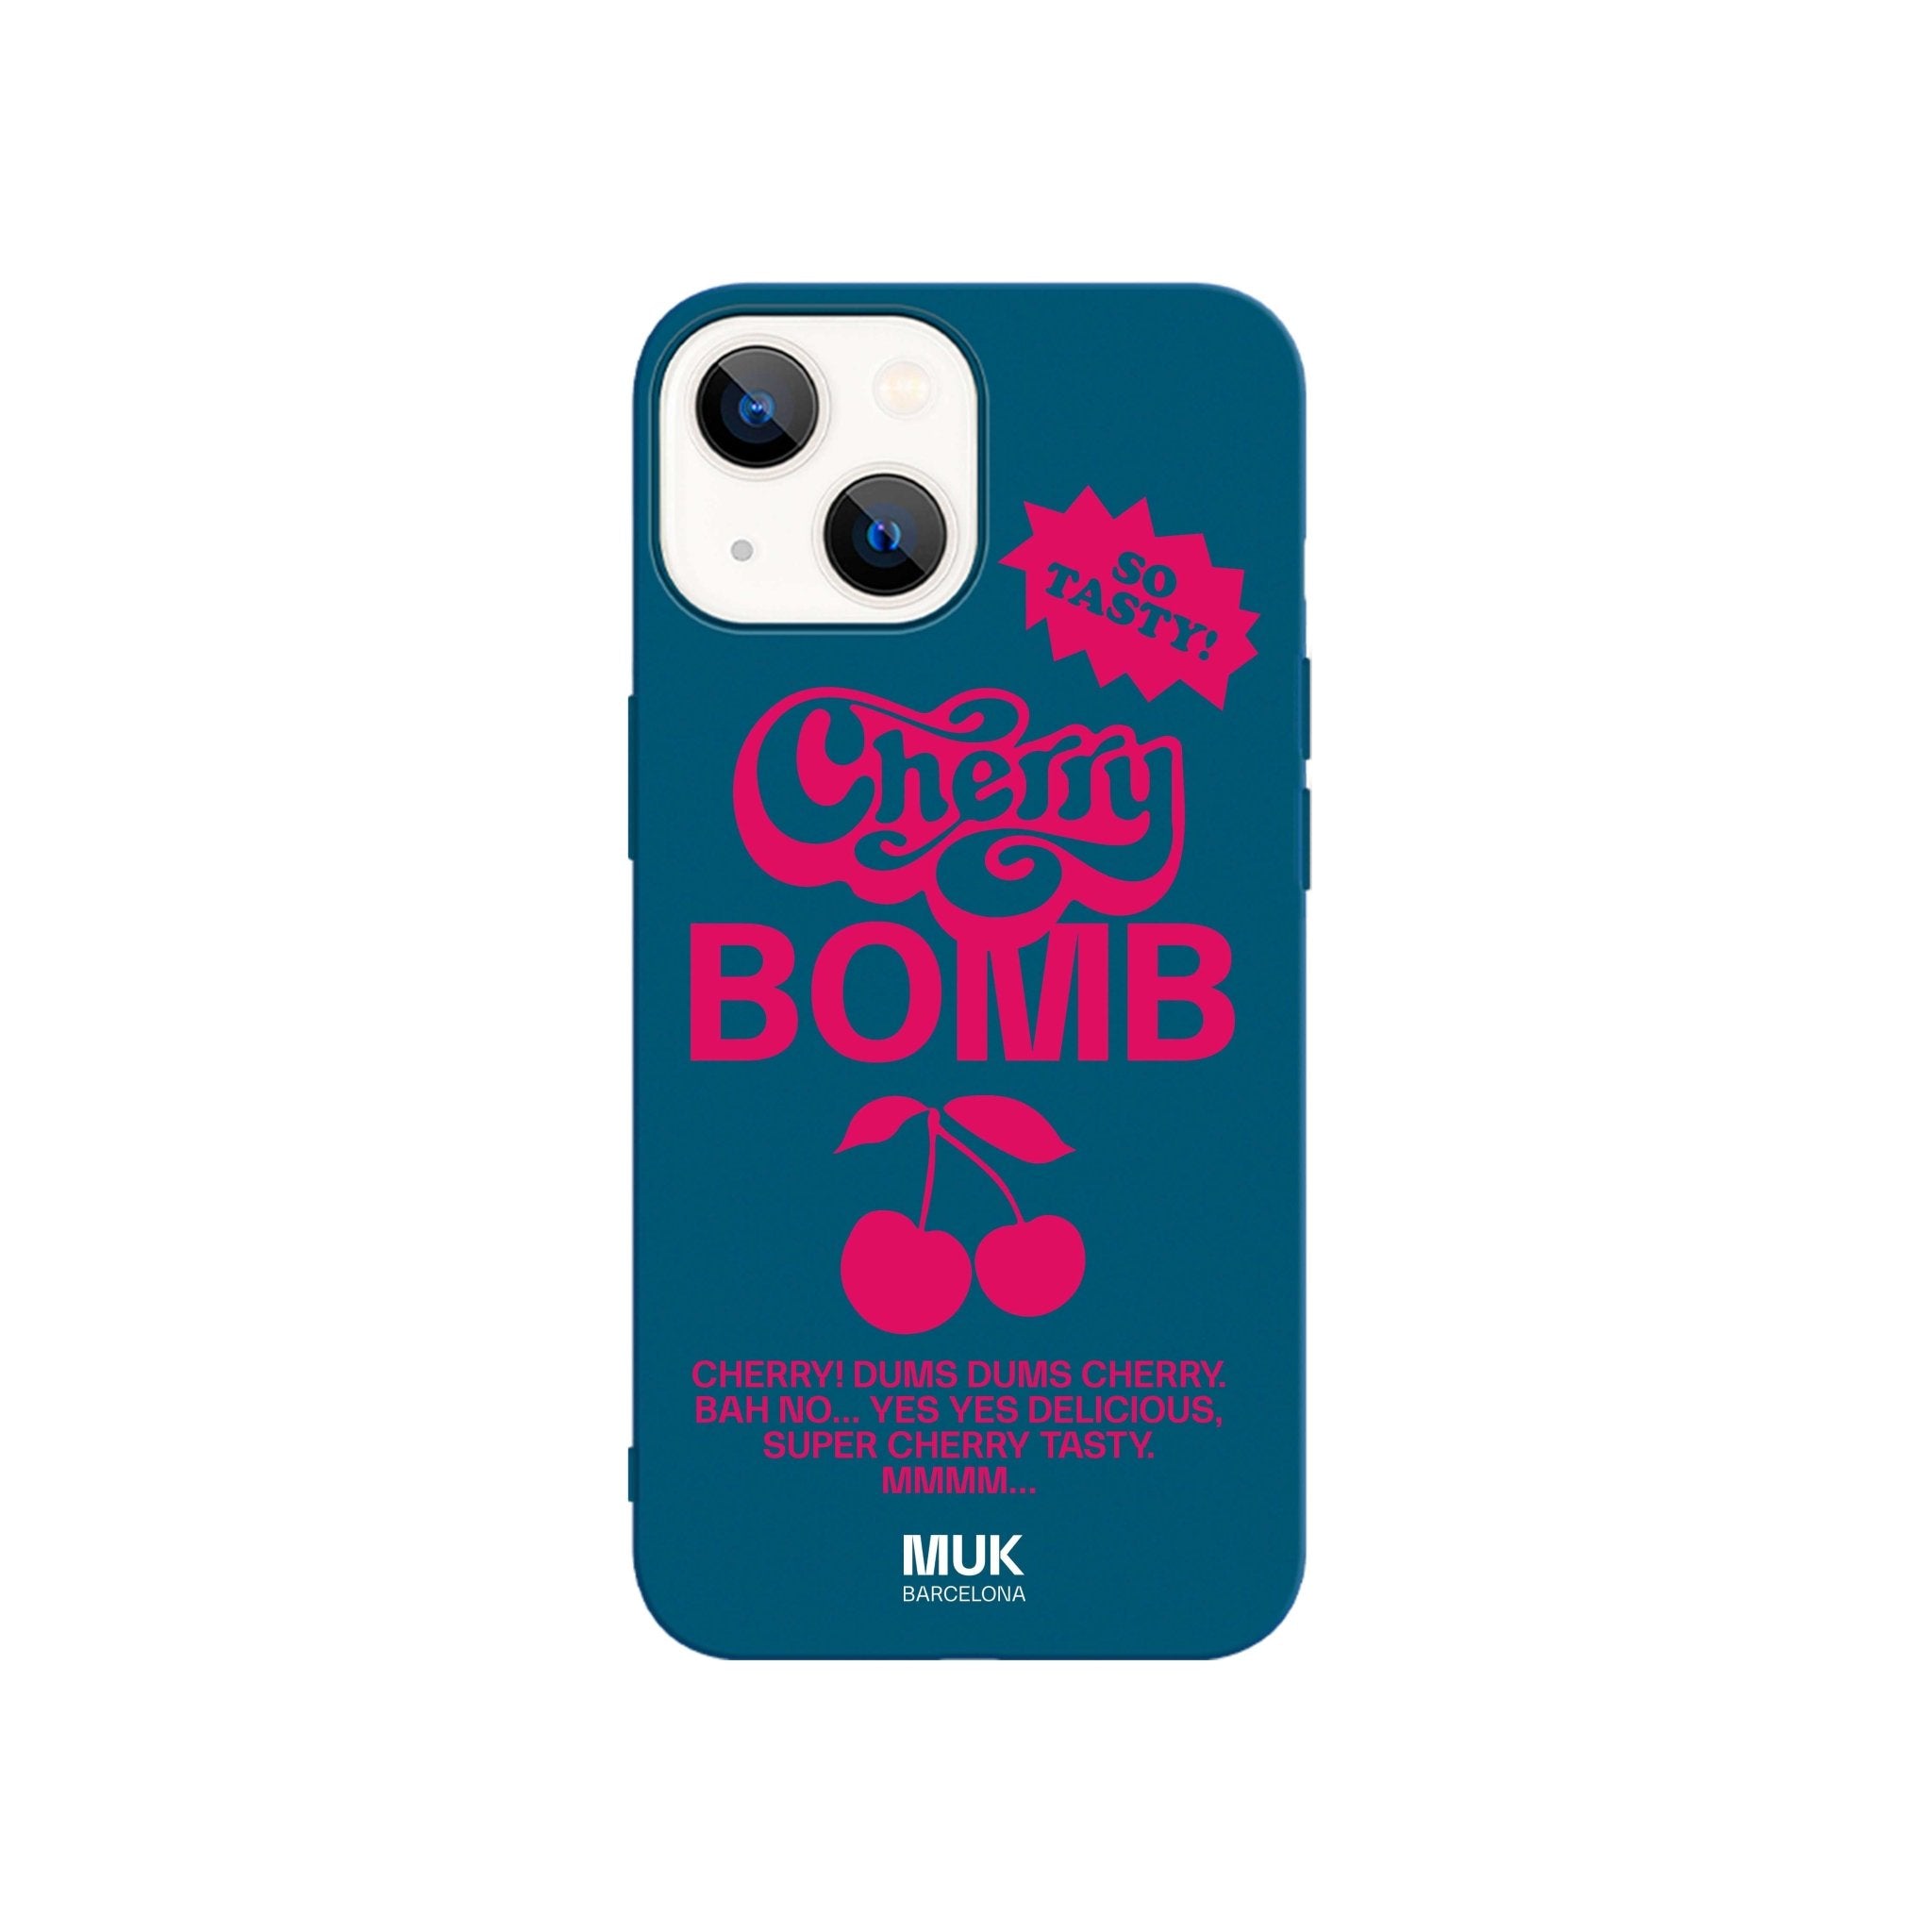 Funda de móvil TPU azul con diseño de cerezas y frase "Cherry bomb" en color rosa fucsia.
